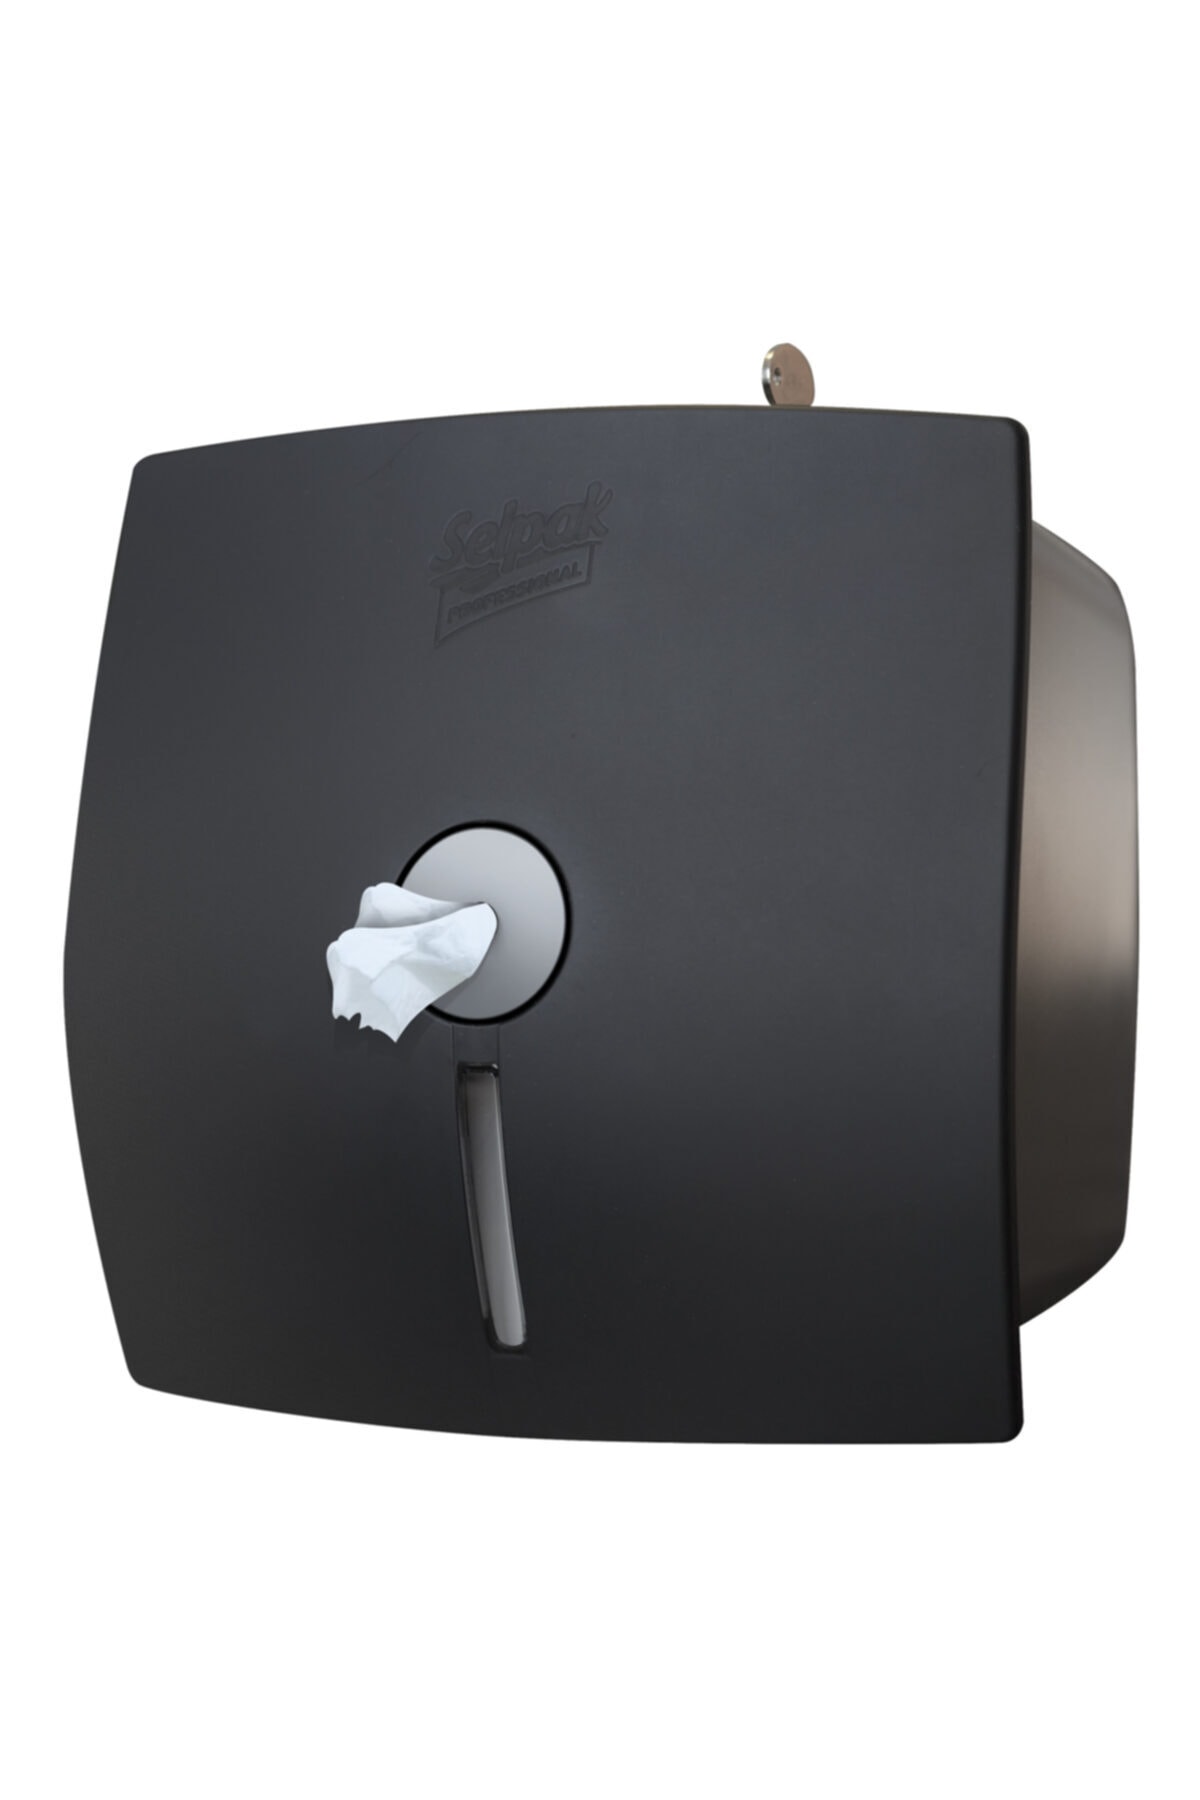 Selpak Professional Içten Çekmeli Tuvalet Kağıdı Dispenseri Siyah 9614117